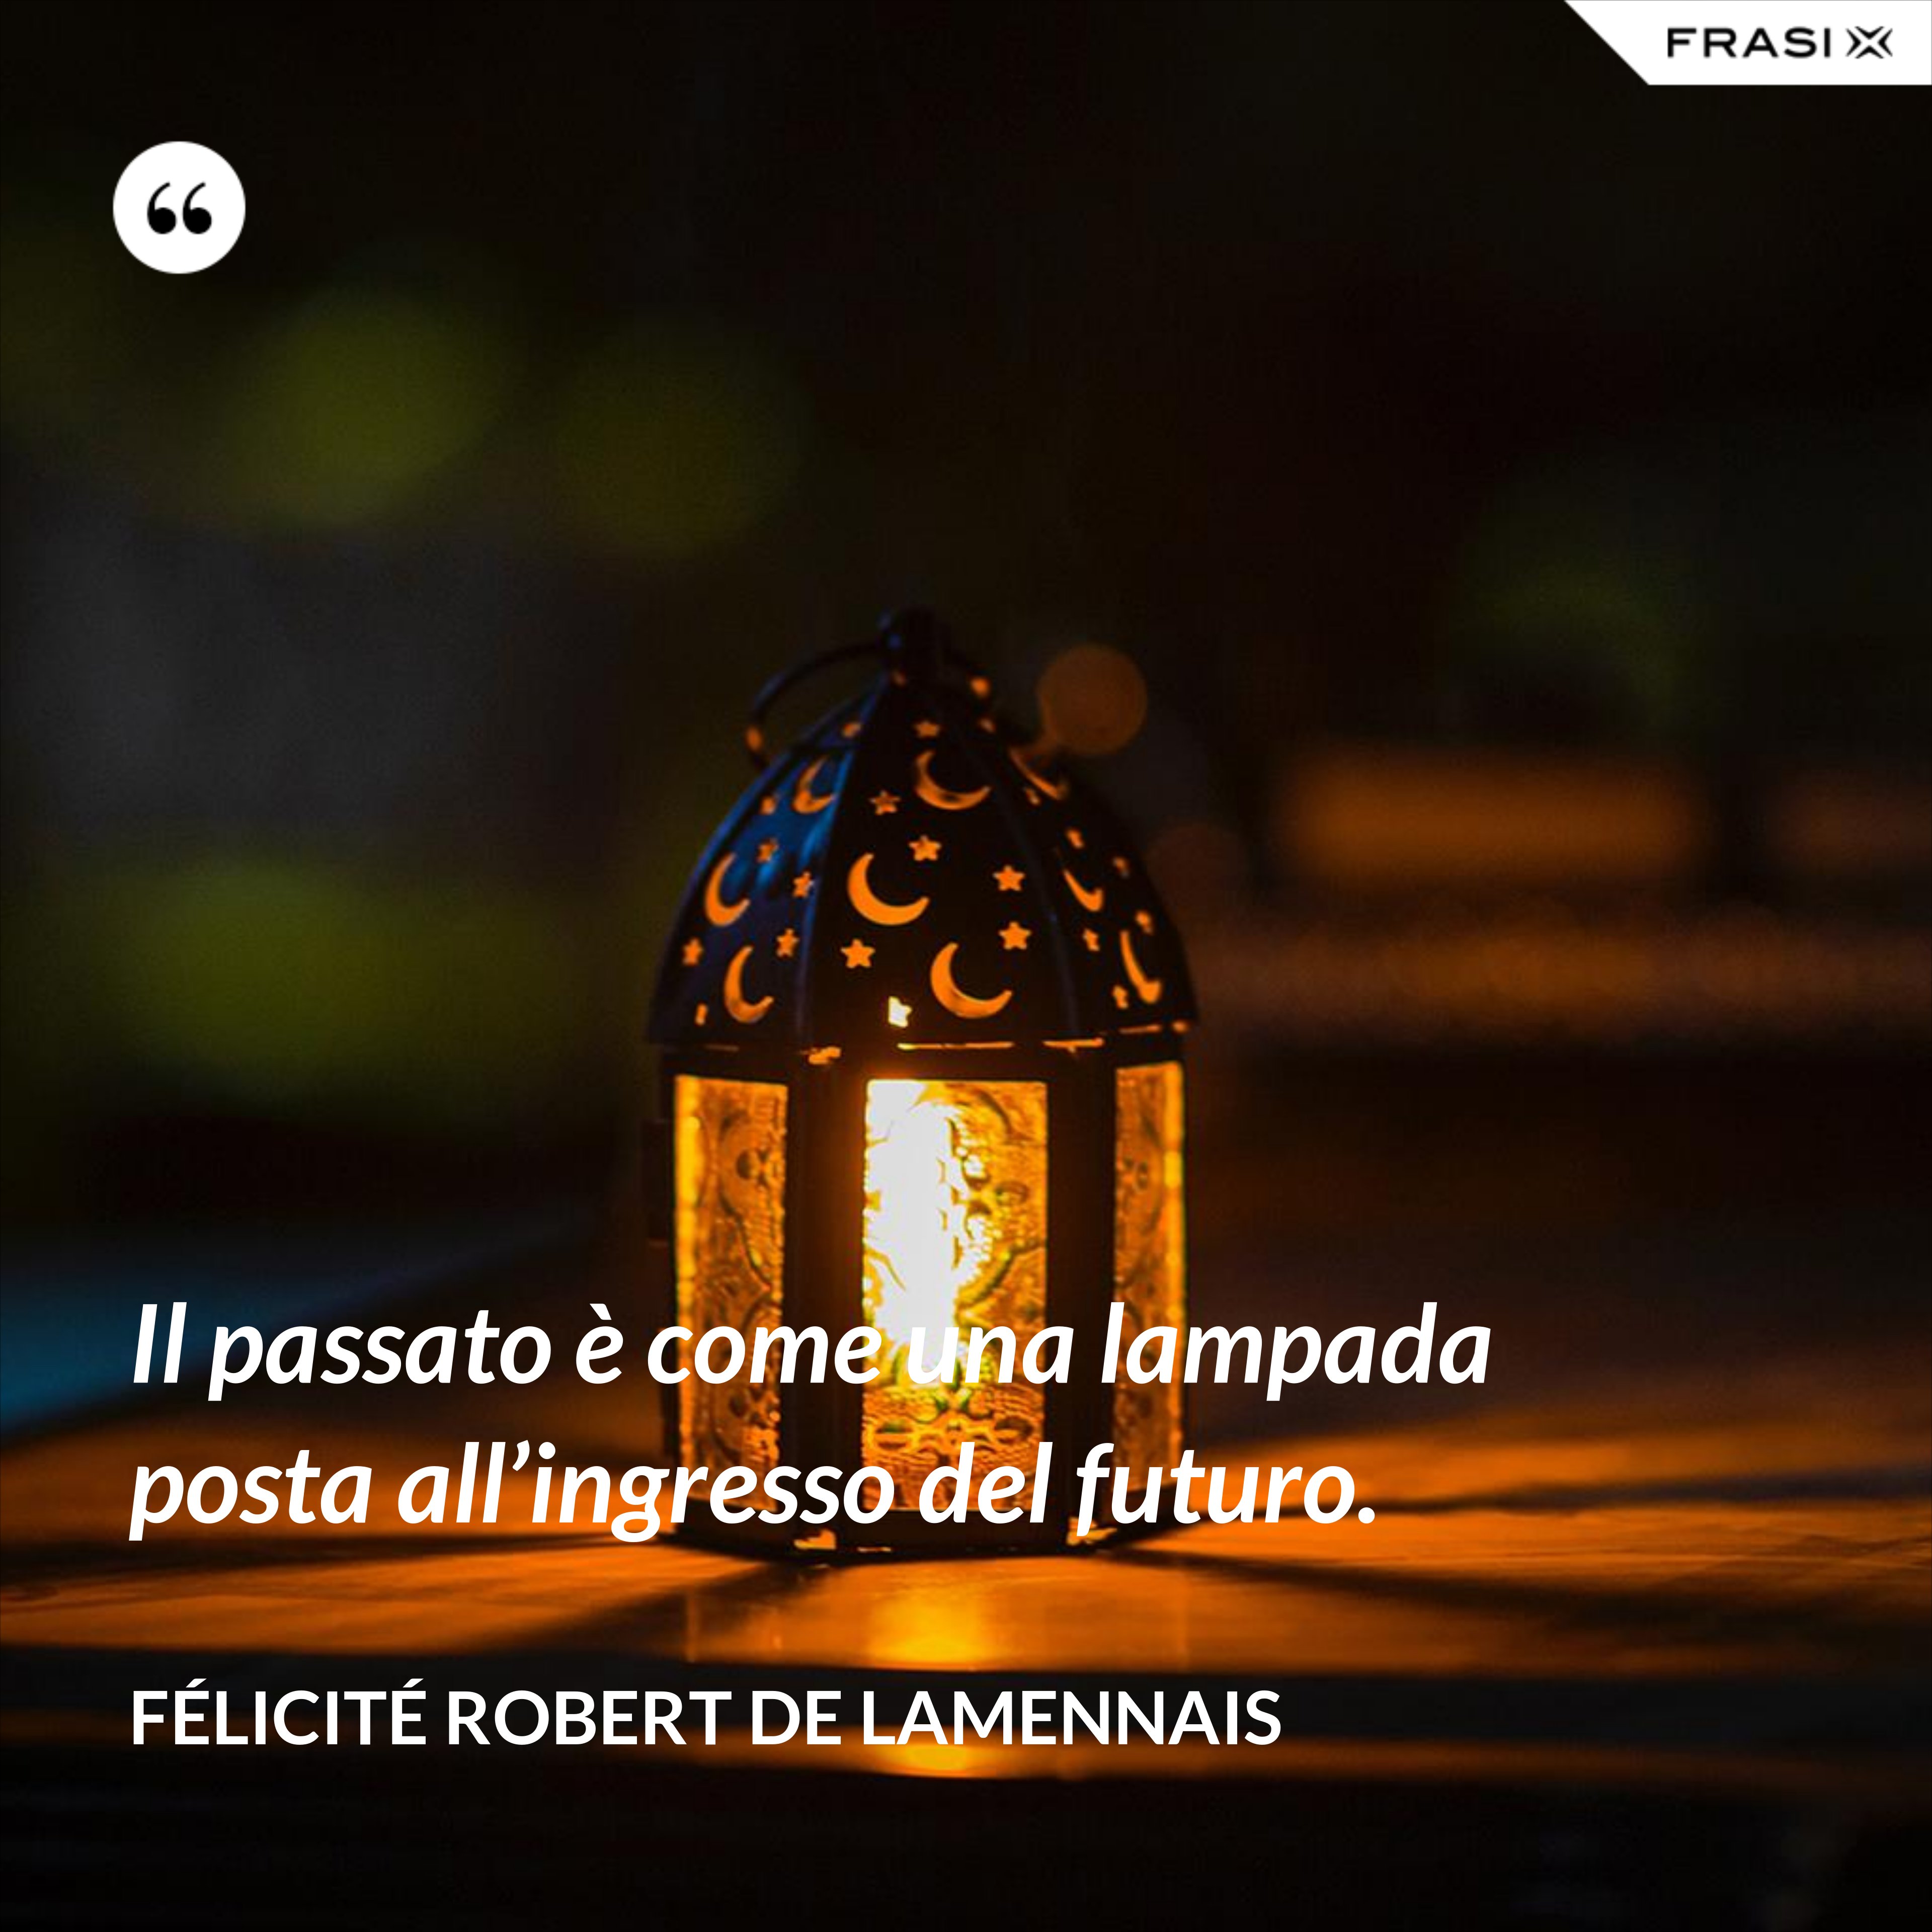 Il passato è come una lampada posta all’ingresso del futuro. - Félicité Robert de Lamennais